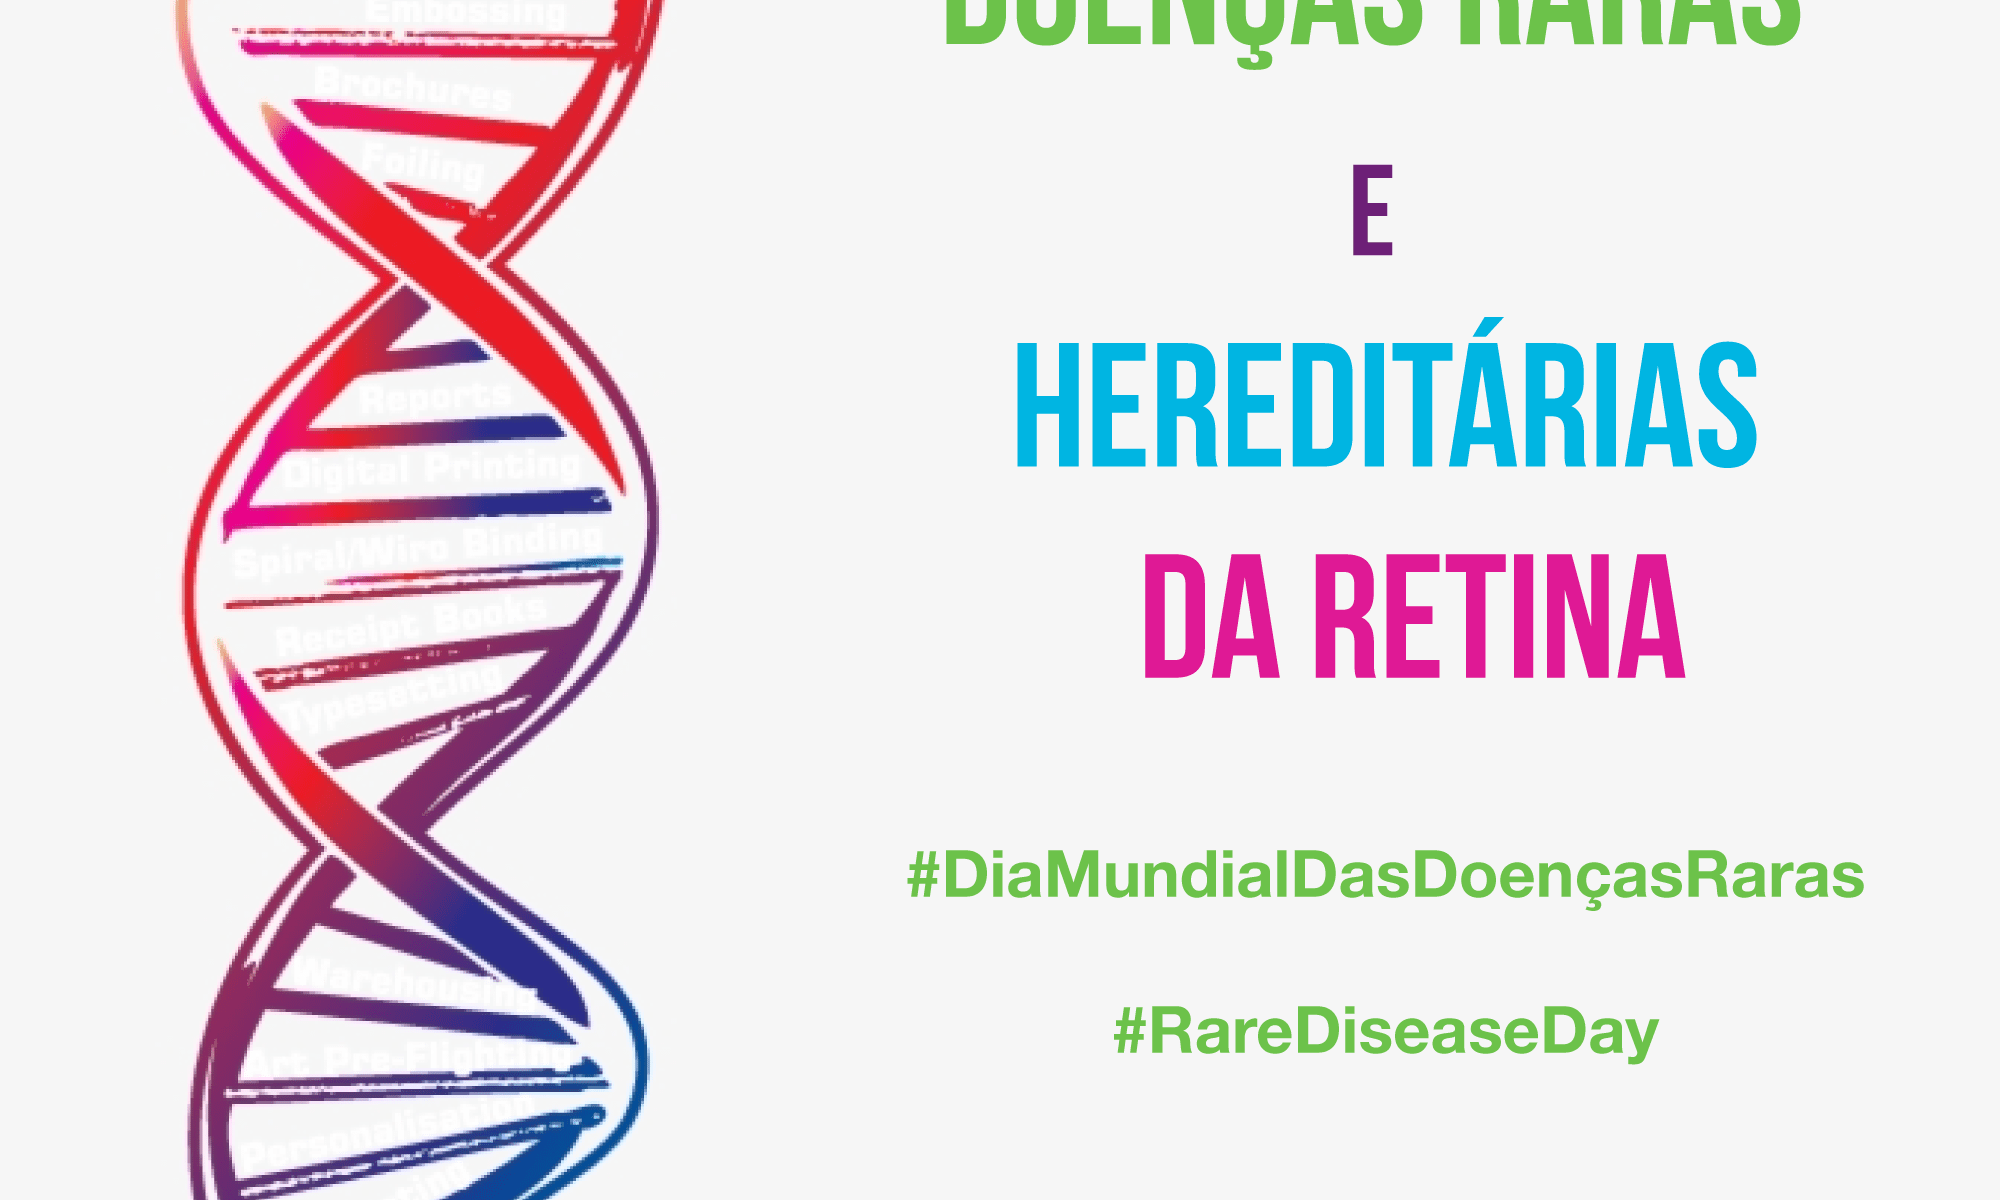 #PraCegoVer imagem com um desenho de filamento de DNA. Está escrito: Doenças Raras e Hereditárias da Retina. #DiaMundialDasDoençasRaras #RareDiseaseDay" Há as logos da Retina Brasil e do Rare Disease Day